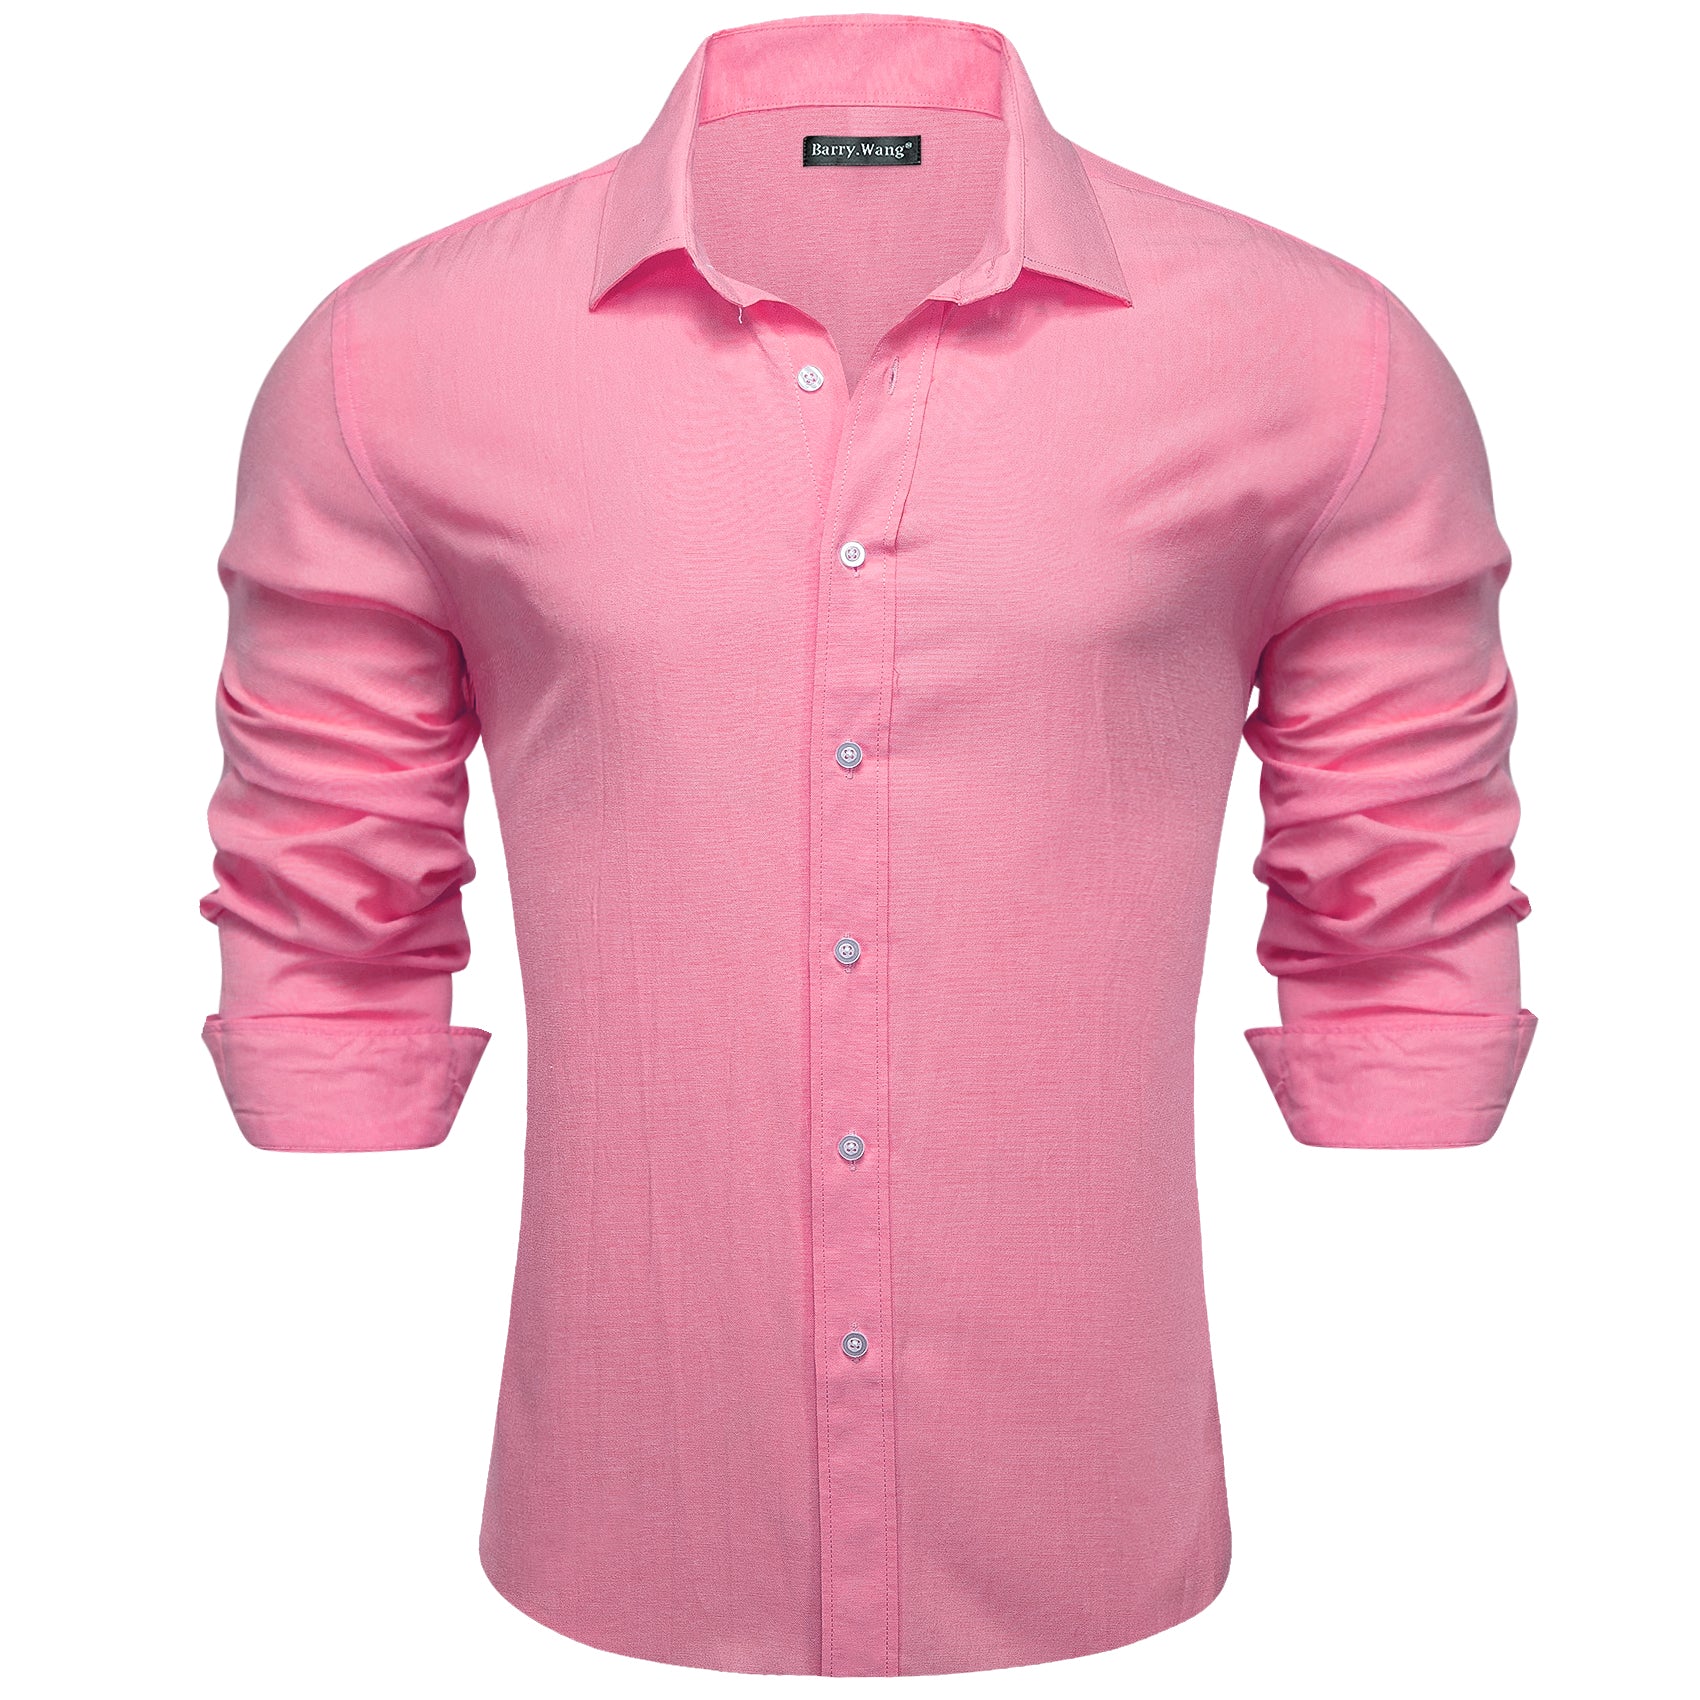 Barry.wang Pink Solid Silk Shirt